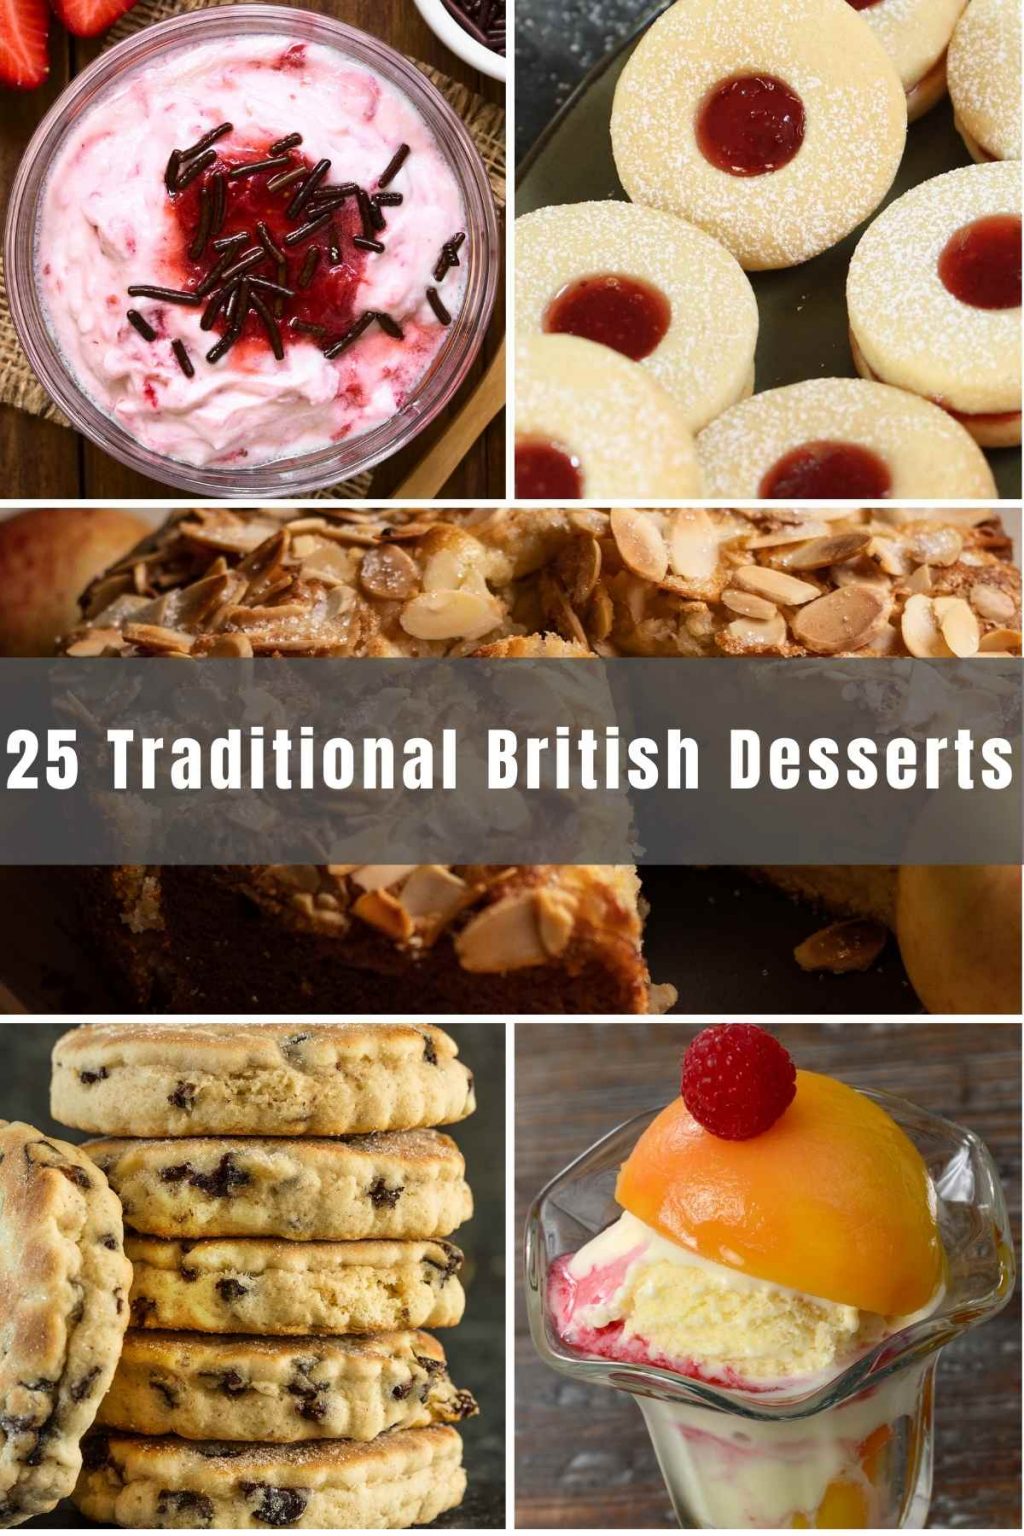 25 Best Traditional British Desserts Izzycooking 1465